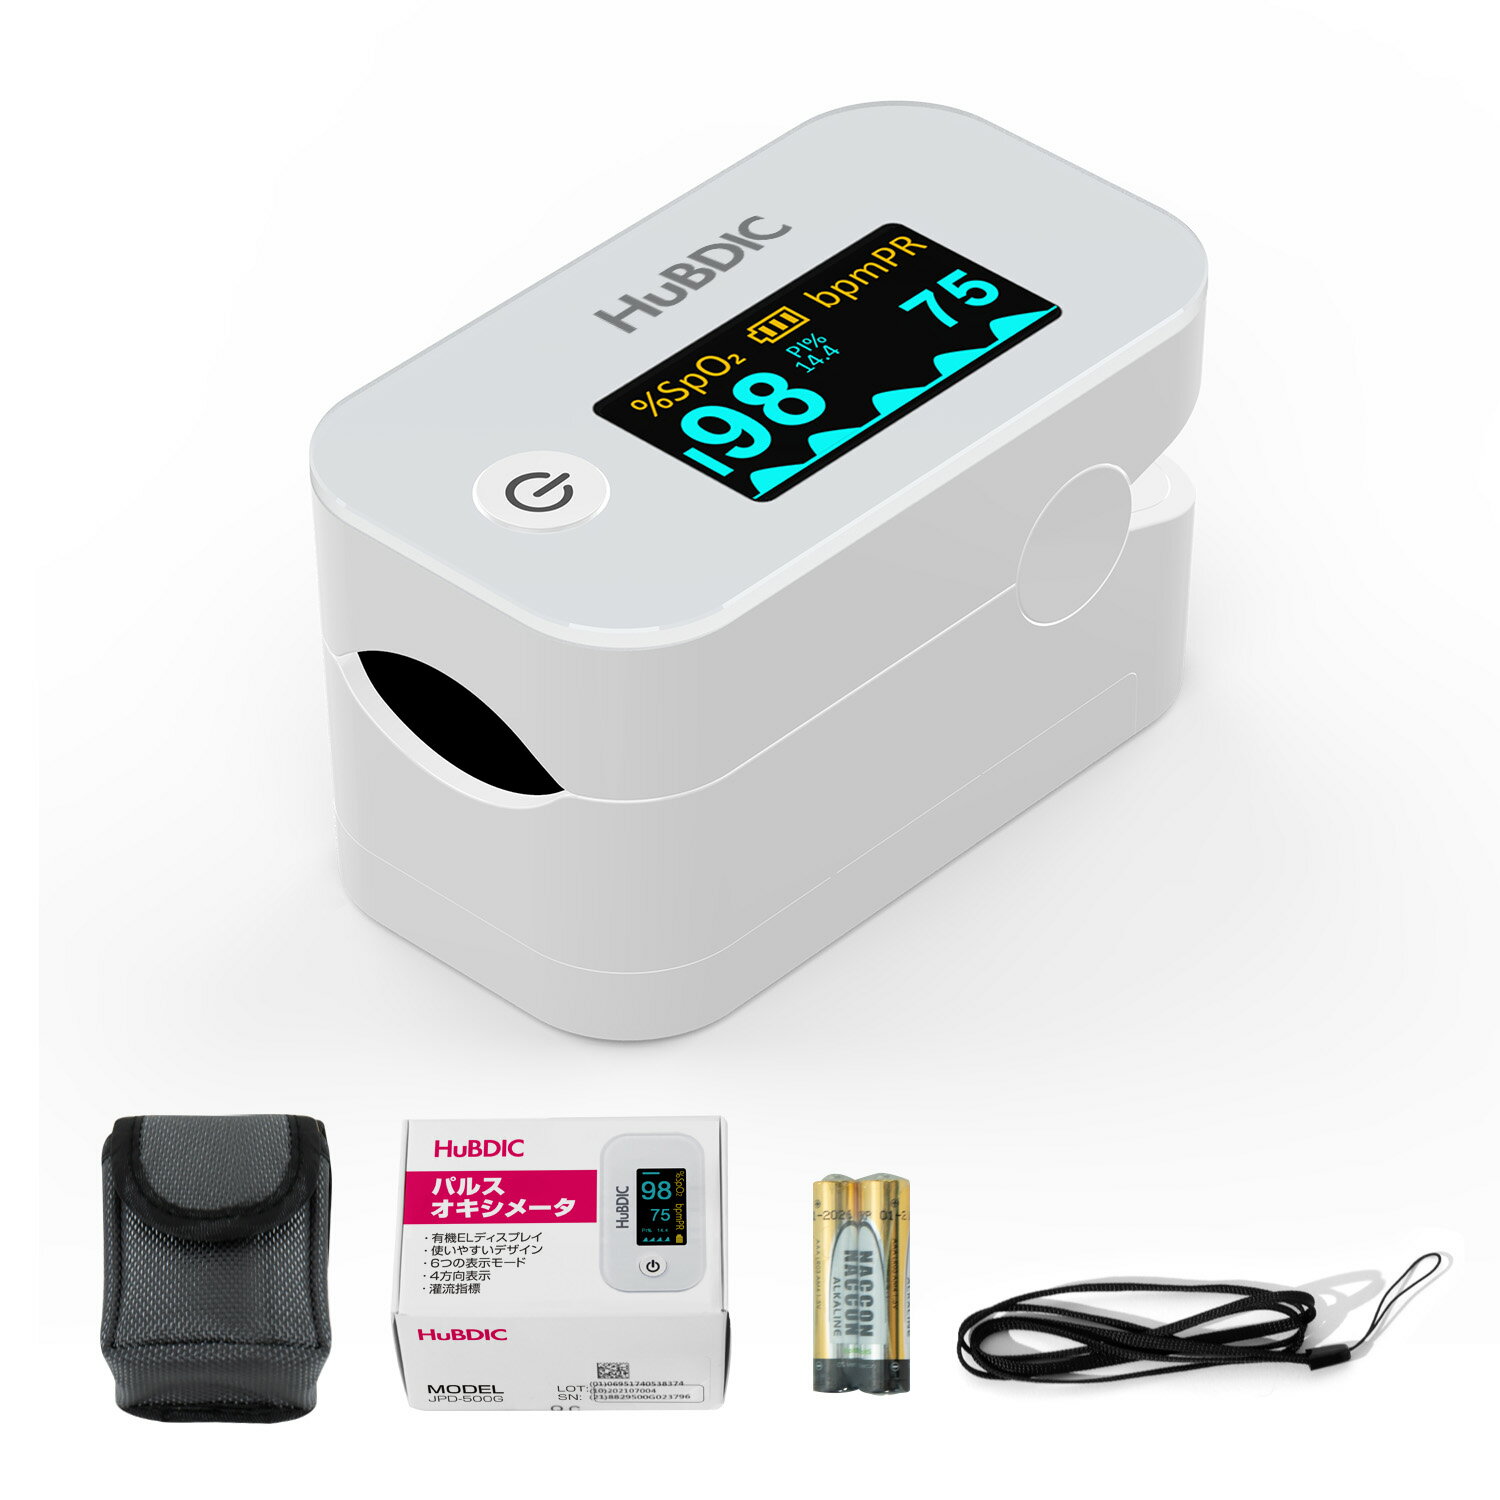 パルスオキシメーター 医療機器認証取得 血中酸素濃度 酸素濃度計 脈拍測定器 心拍計 SpO2 有機ELディスプレイ 4方向…